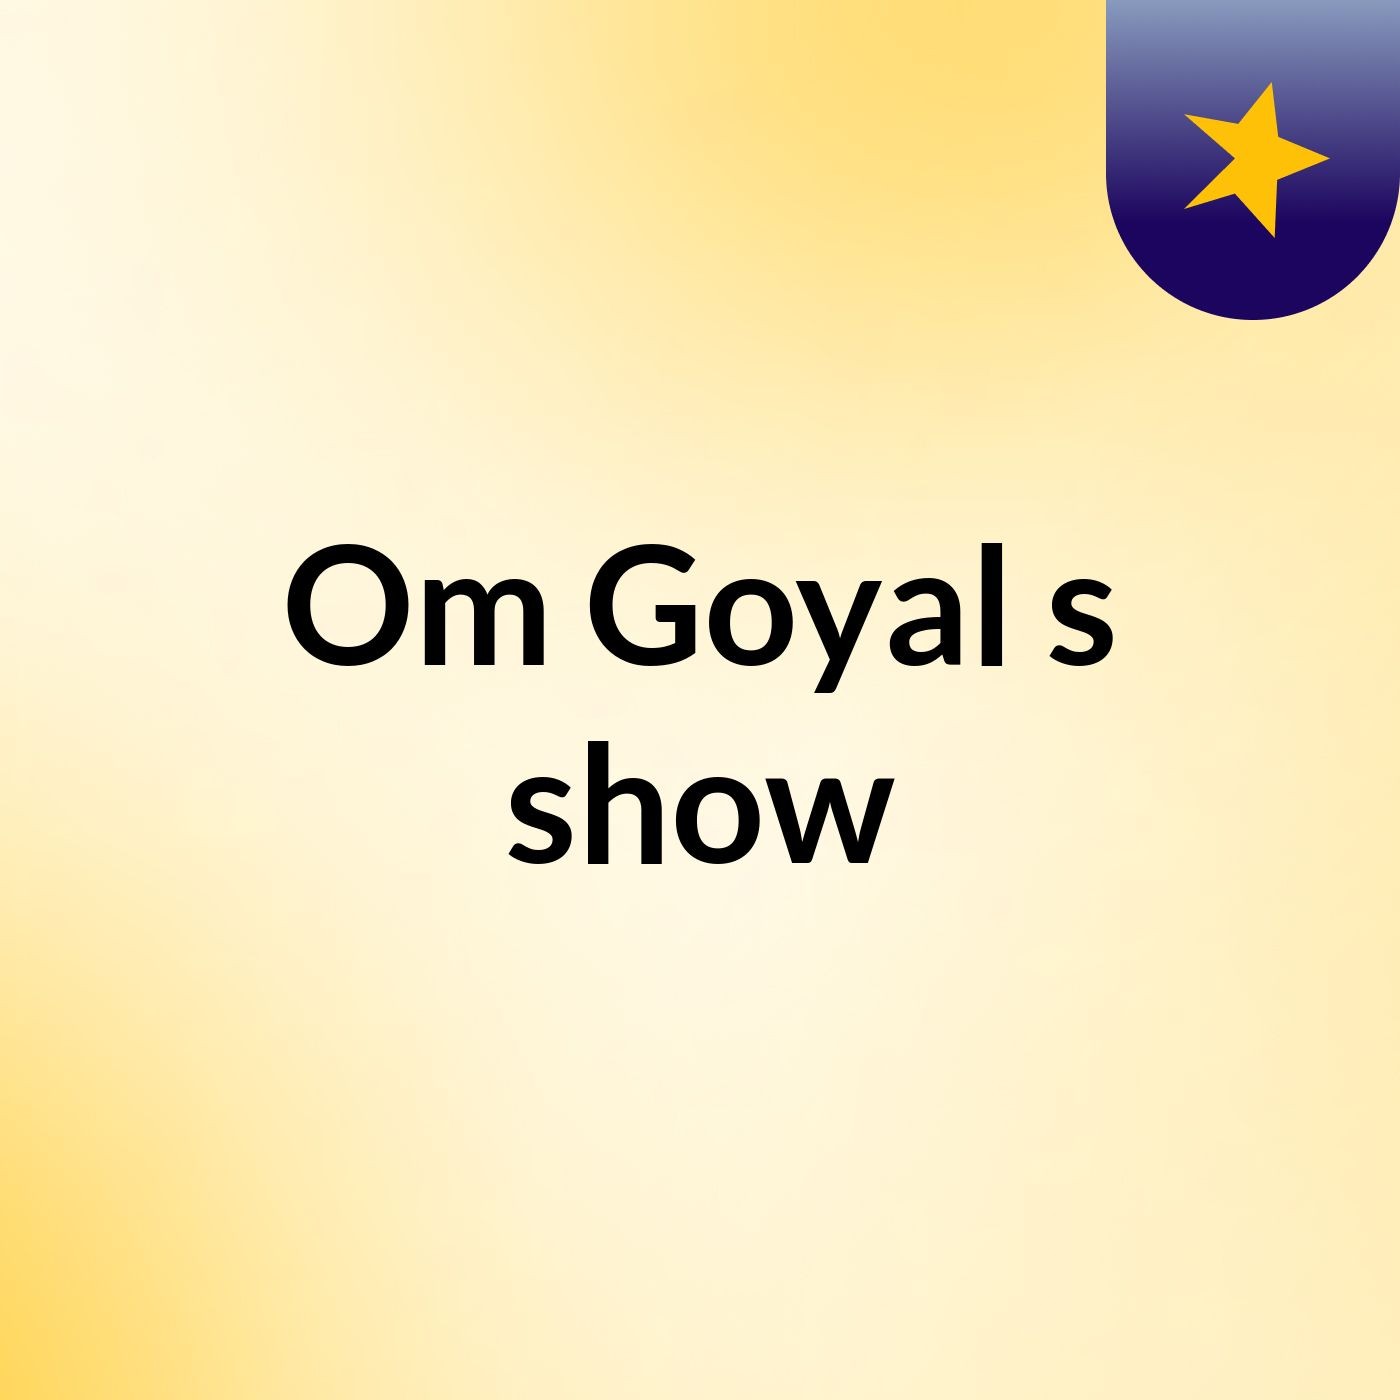 Om Goyal's show